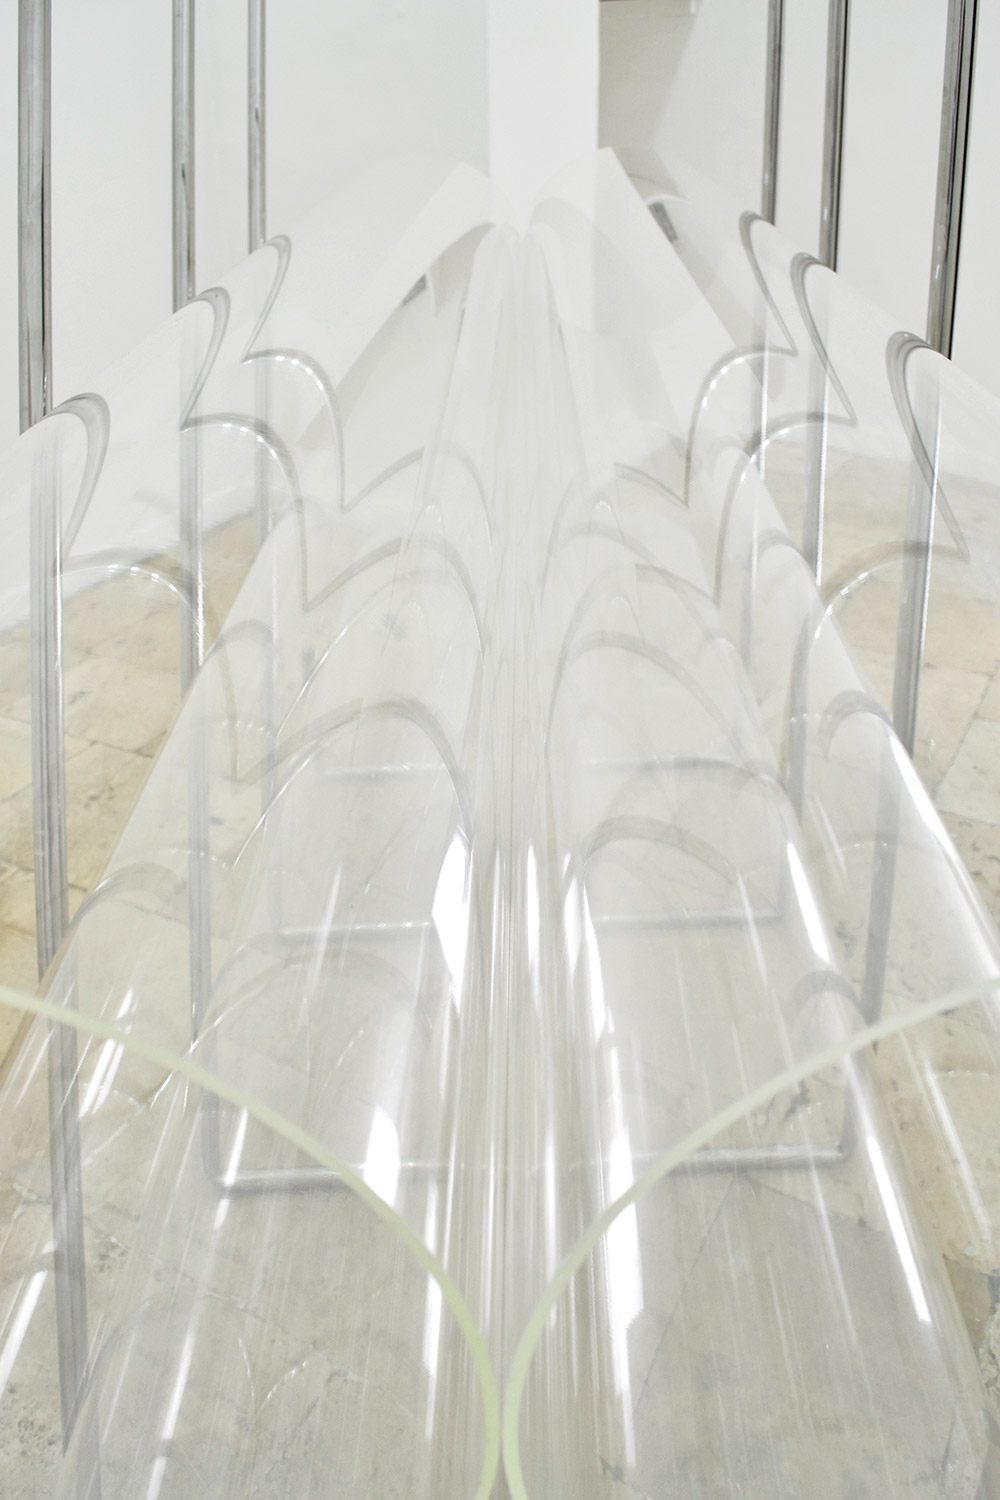 Antonio Trotta, Paquete especial, 1966-2016, acciaio, plexiglass, 330x145x110 cm (detail)